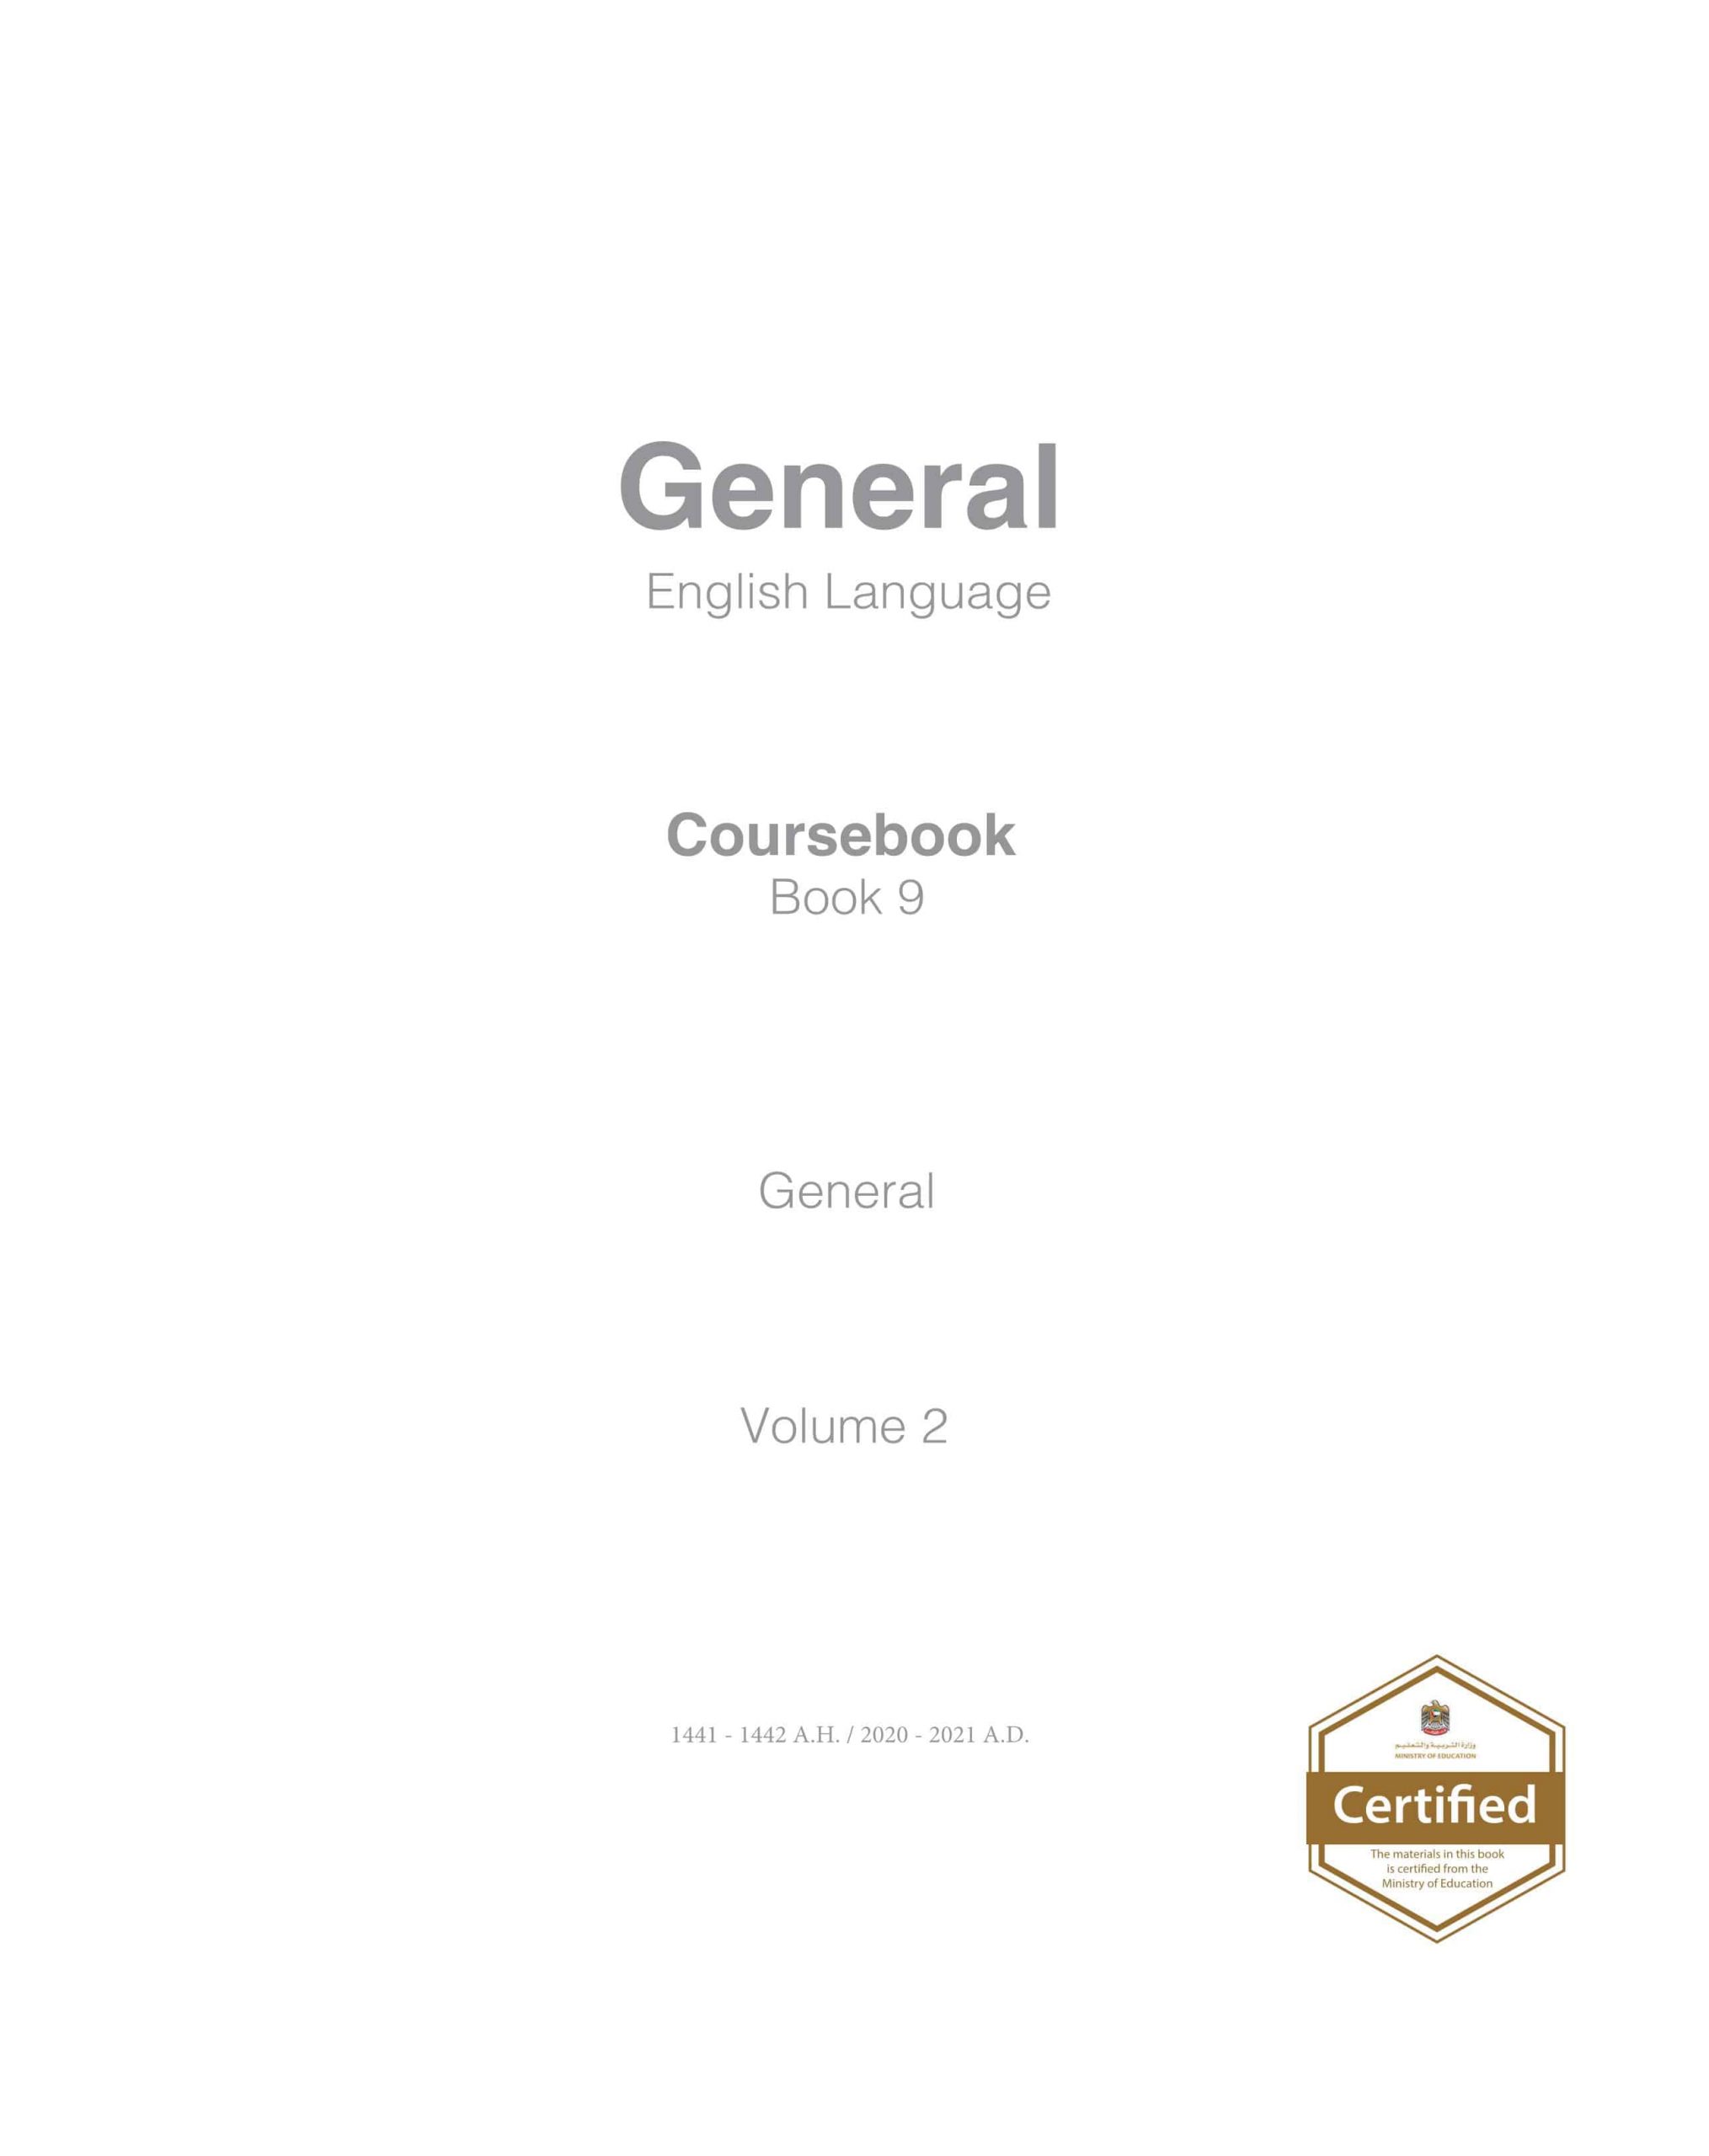 كتاب الطالب Course book الفصل الدراسي الثاني 2020-2021 الصف التاسع مادة اللغة الانجليزية 